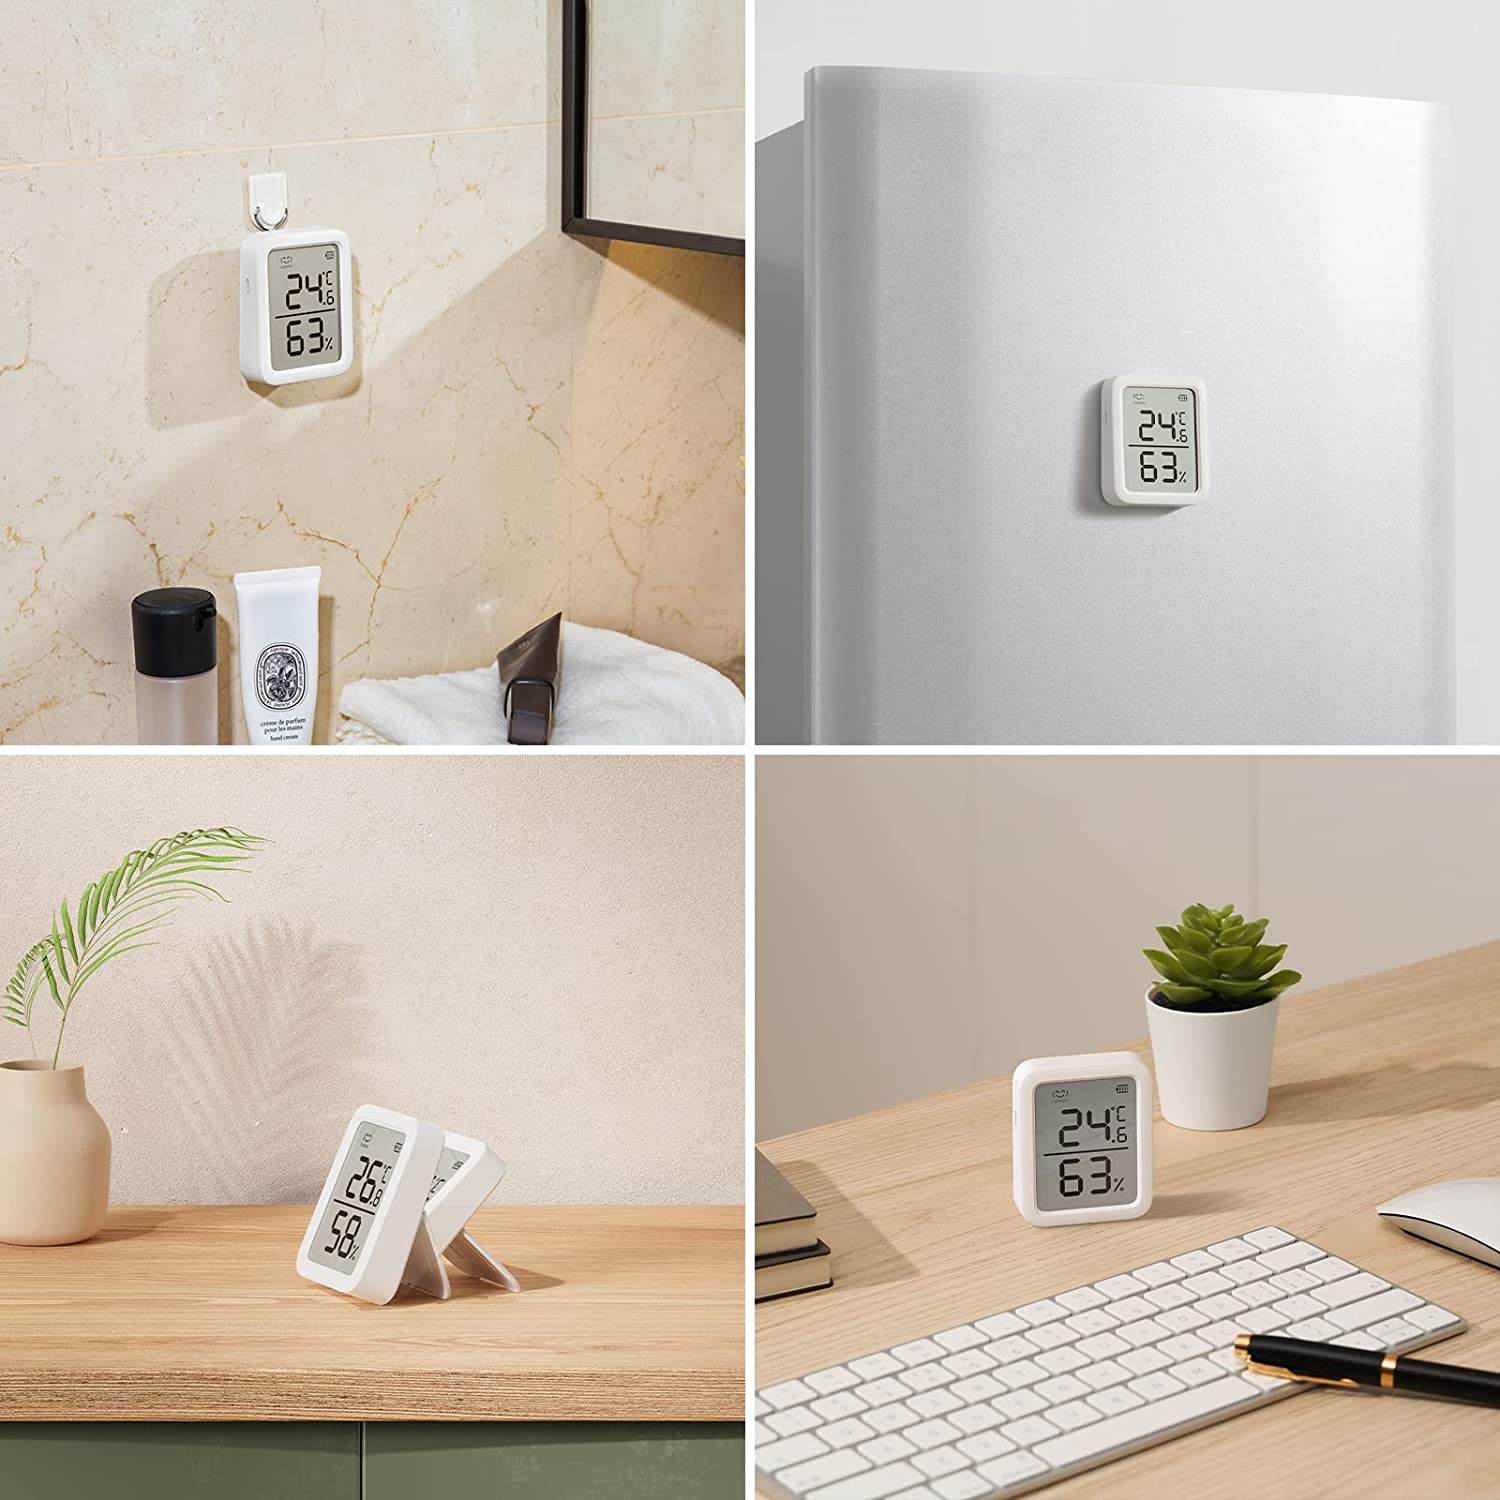  SwitchBot Termómetro higrómetro para interiores, monitor de  temperatura digital Bluetooth con almacenamiento de datos gratuito, punto  de rocío/VPD/humedad absoluta, higrómetro medidor de humedad :  Electrodomésticos